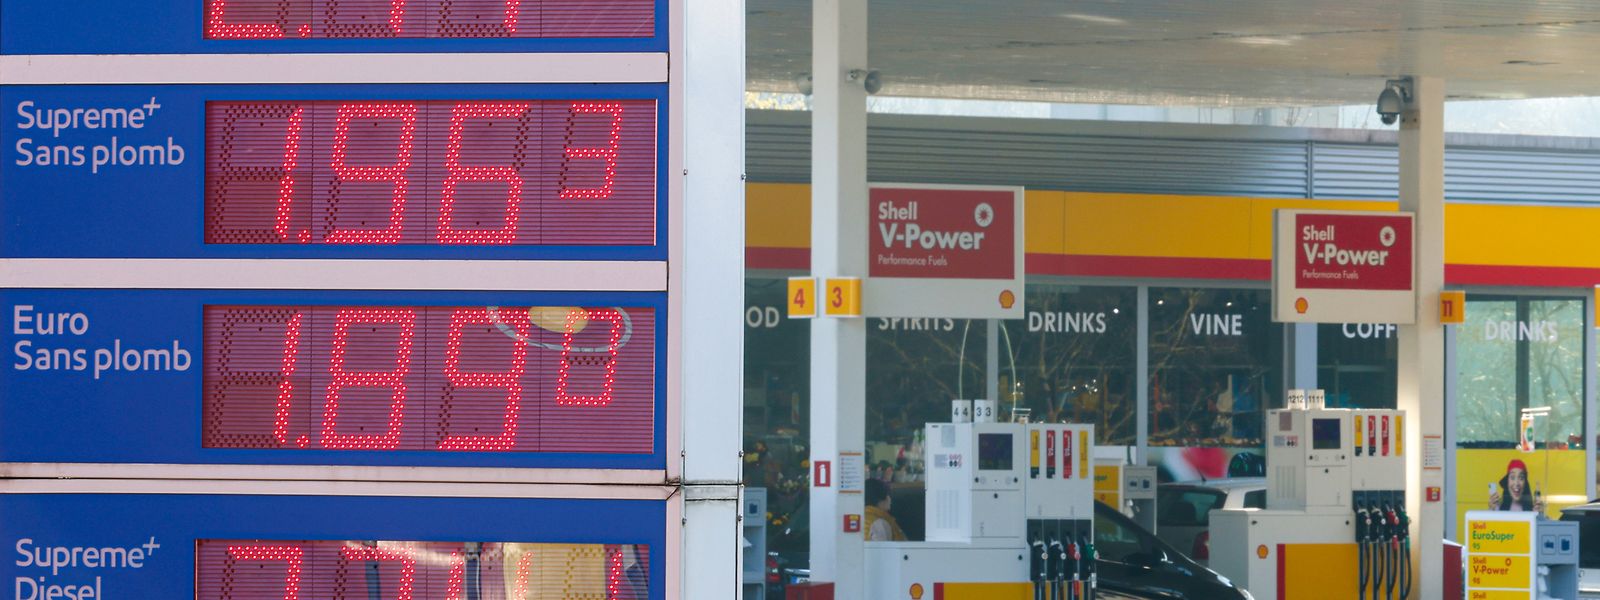 Pour un litre d'essence Super 95, il faudra dépenser 1,916 euro, soit une augmentation de 0,015€/l. De son côté, la Super 98 coûtera 2,160 euros au litre, une augmentation de 0,003€/l.